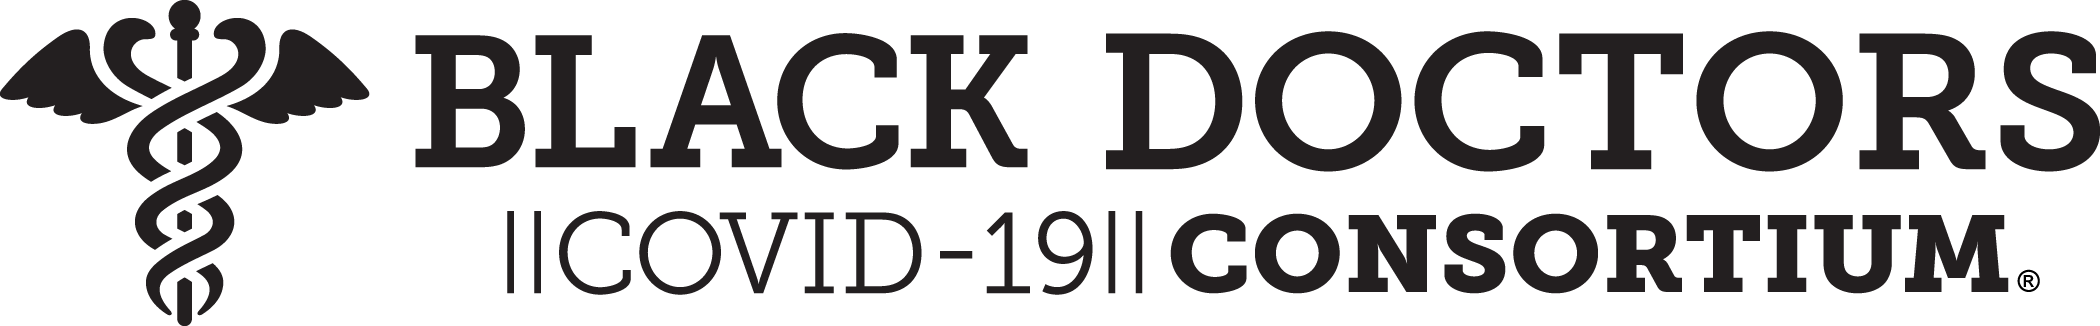 Black Doctors COVID-19 Consortium (BDCC)